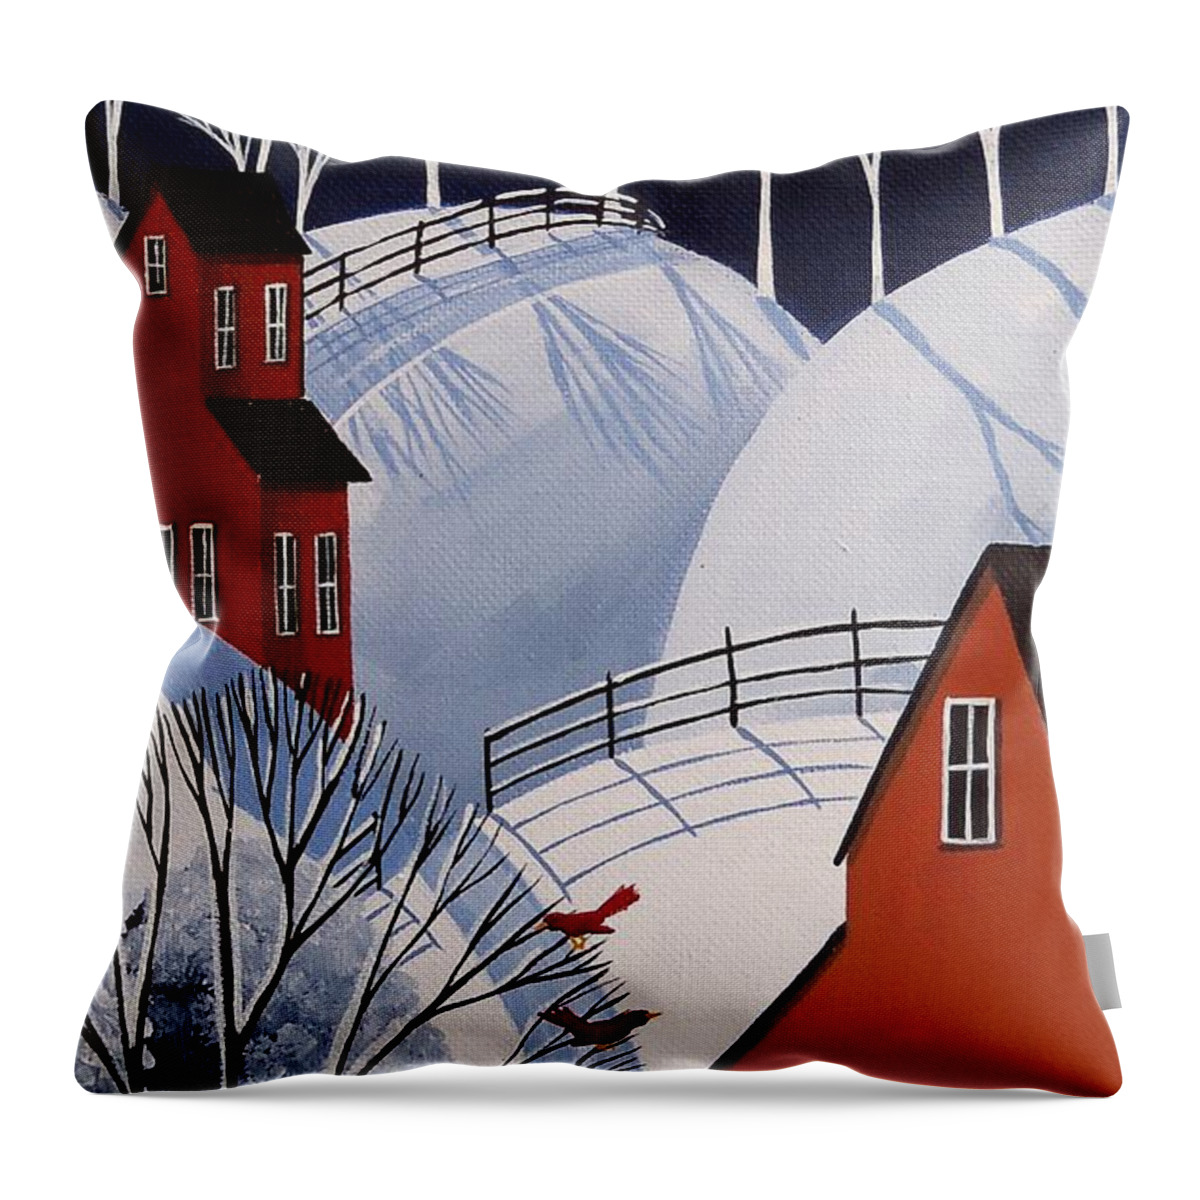 Folk Art Throw Pillow featuring the painting Hi Friends - cardinal red bird cat folk art by Debbie Criswell